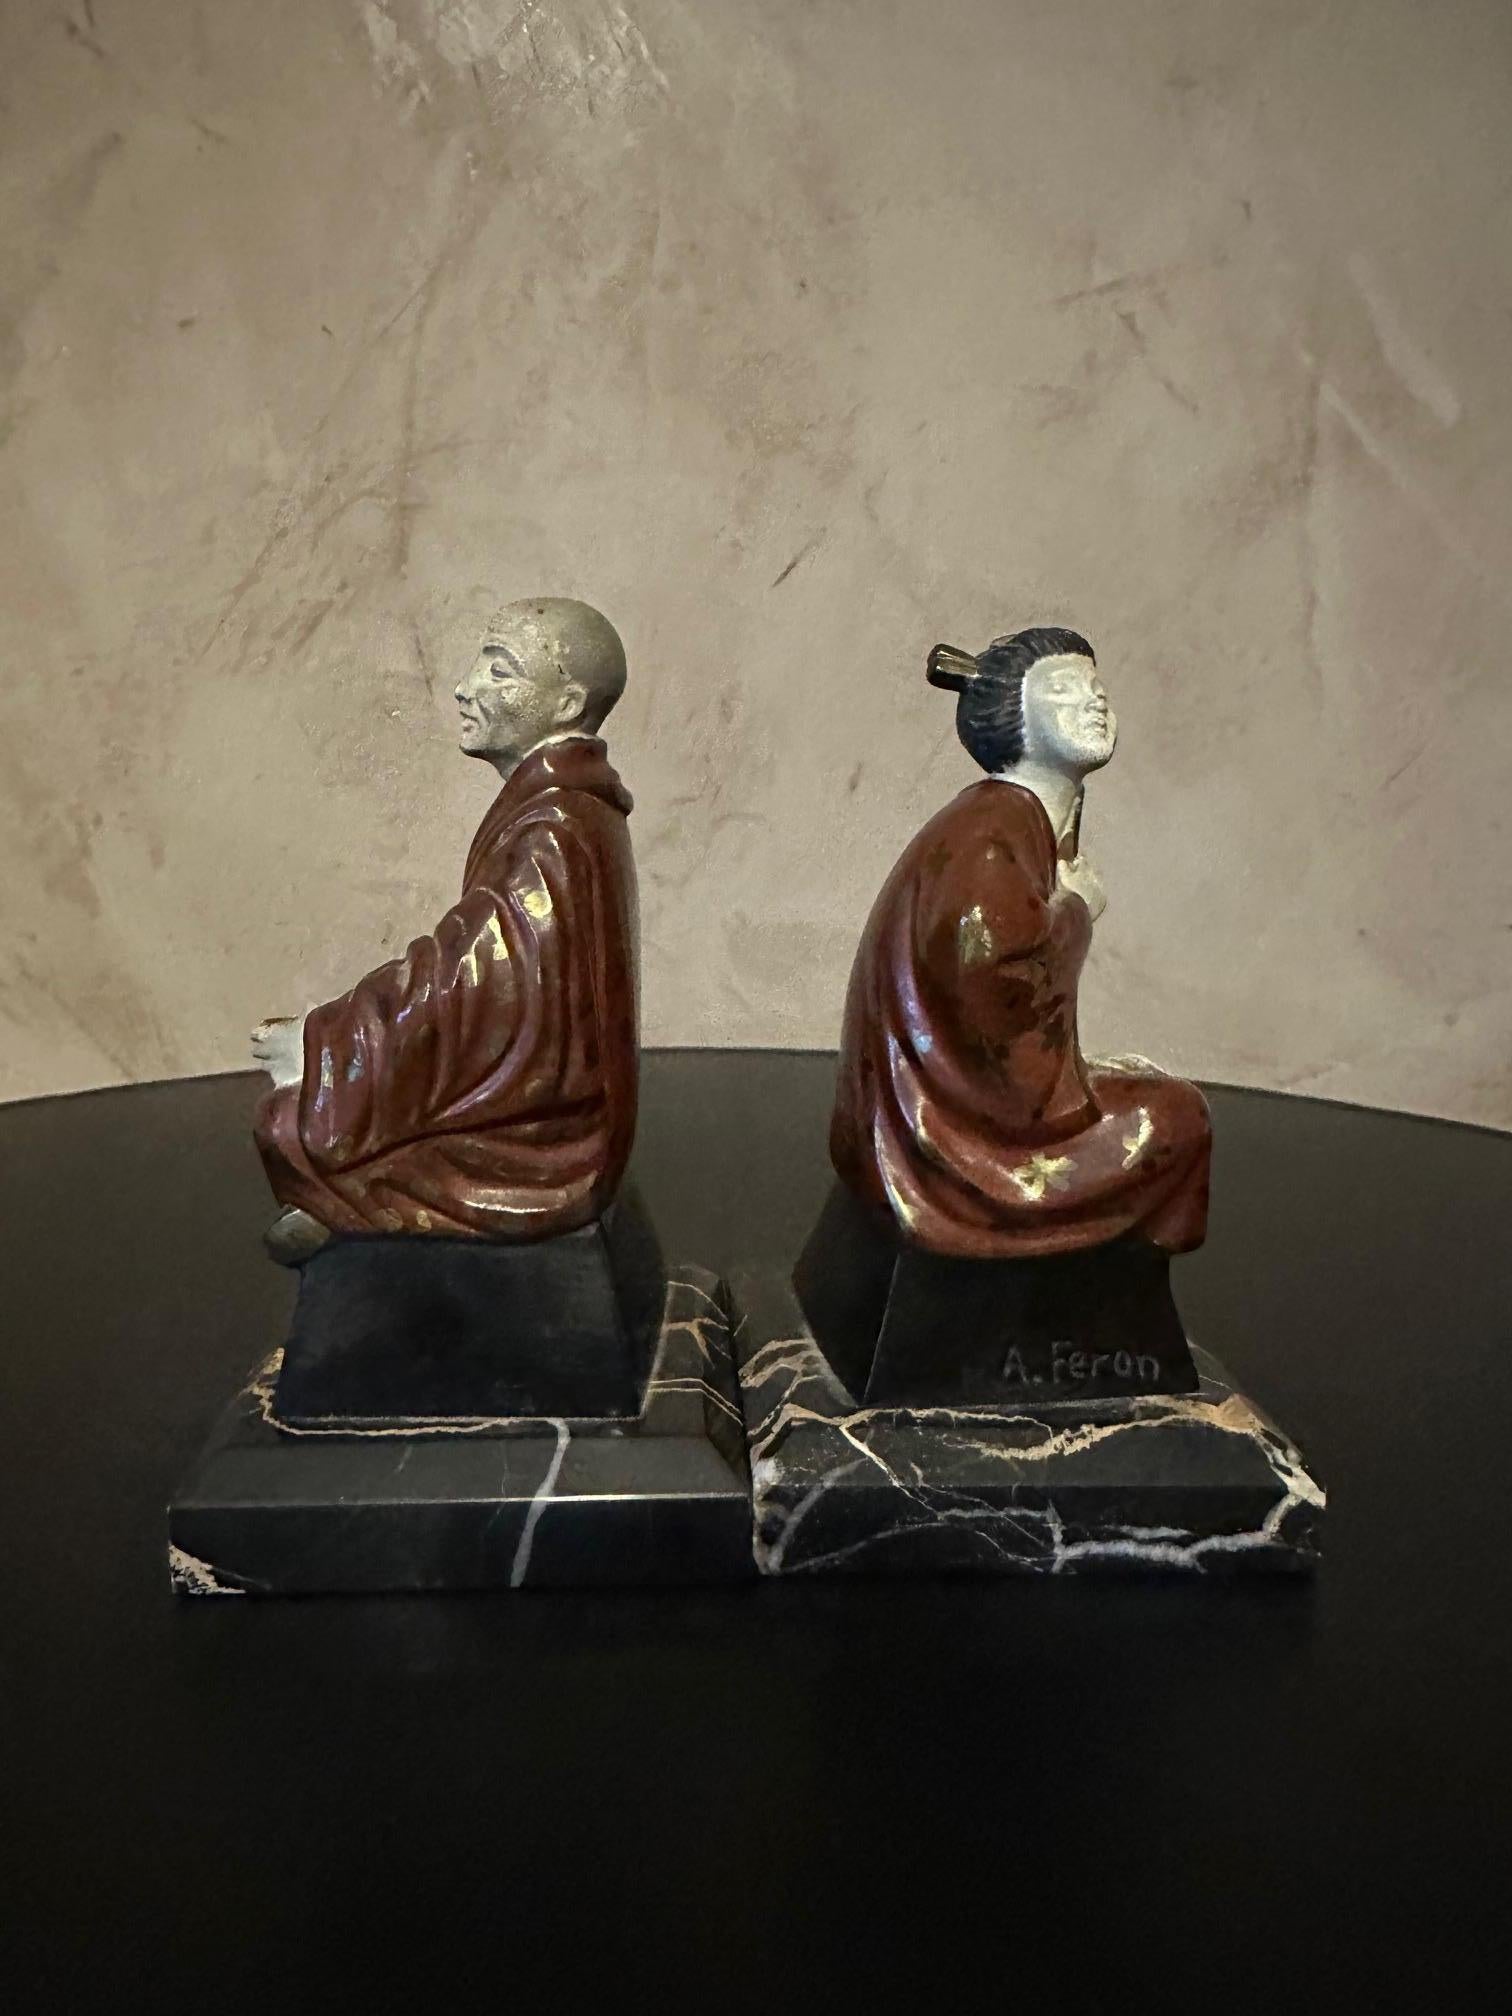 Paire de serre-livres en étain peint sur une base en marbre datant des années 1930 et représentant un moine et une geisha. Signature d'Adams sur chaque personnage.
La peinture est décolorée à certains endroits, mais l'ensemble est en bon état.
Bonne